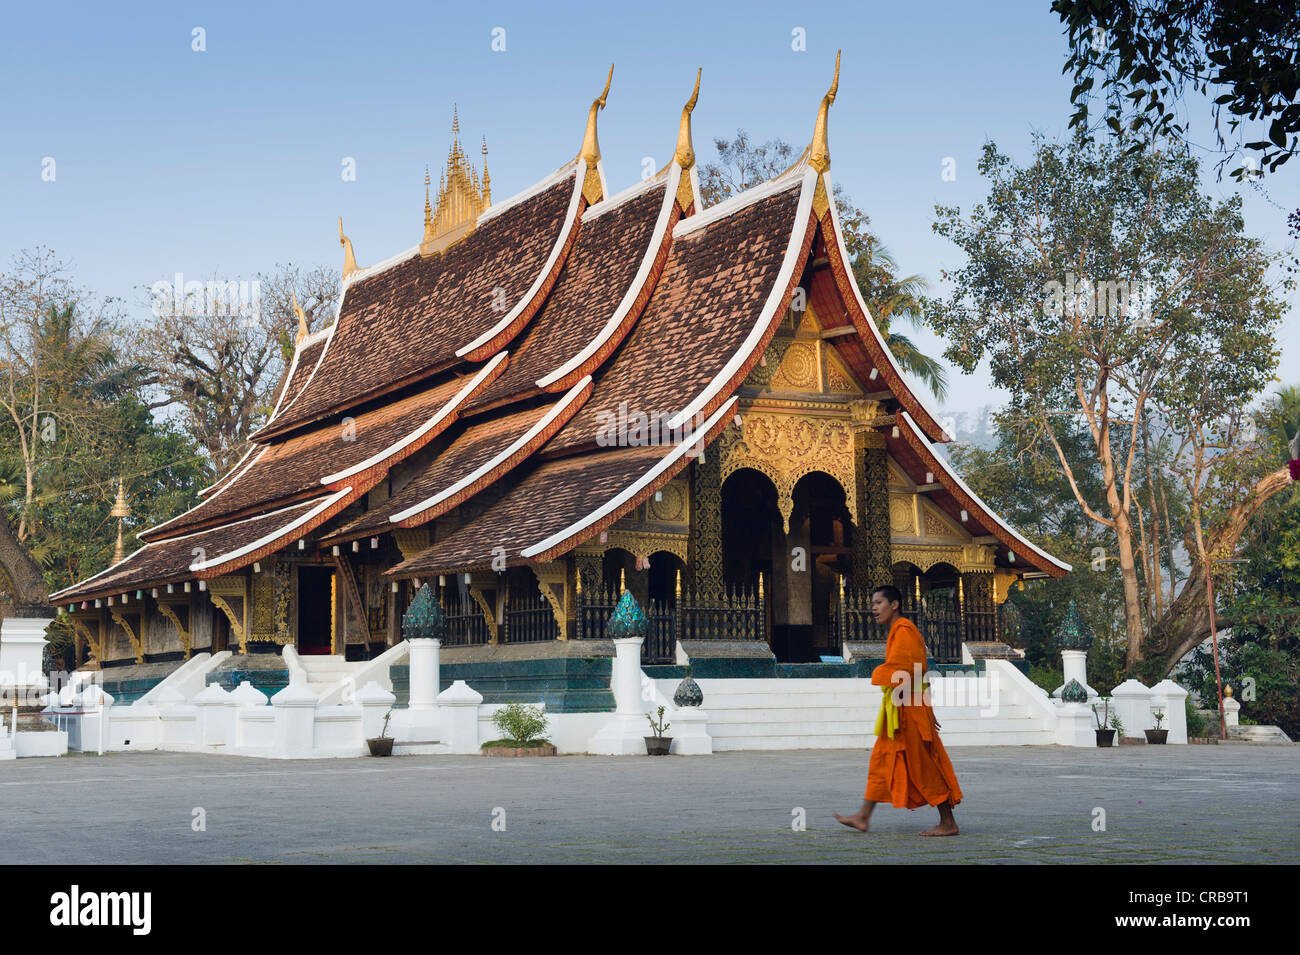 Wat Xieng Thong temple, Luang Prabang, Laos, Indochina, Asia Stock Photo